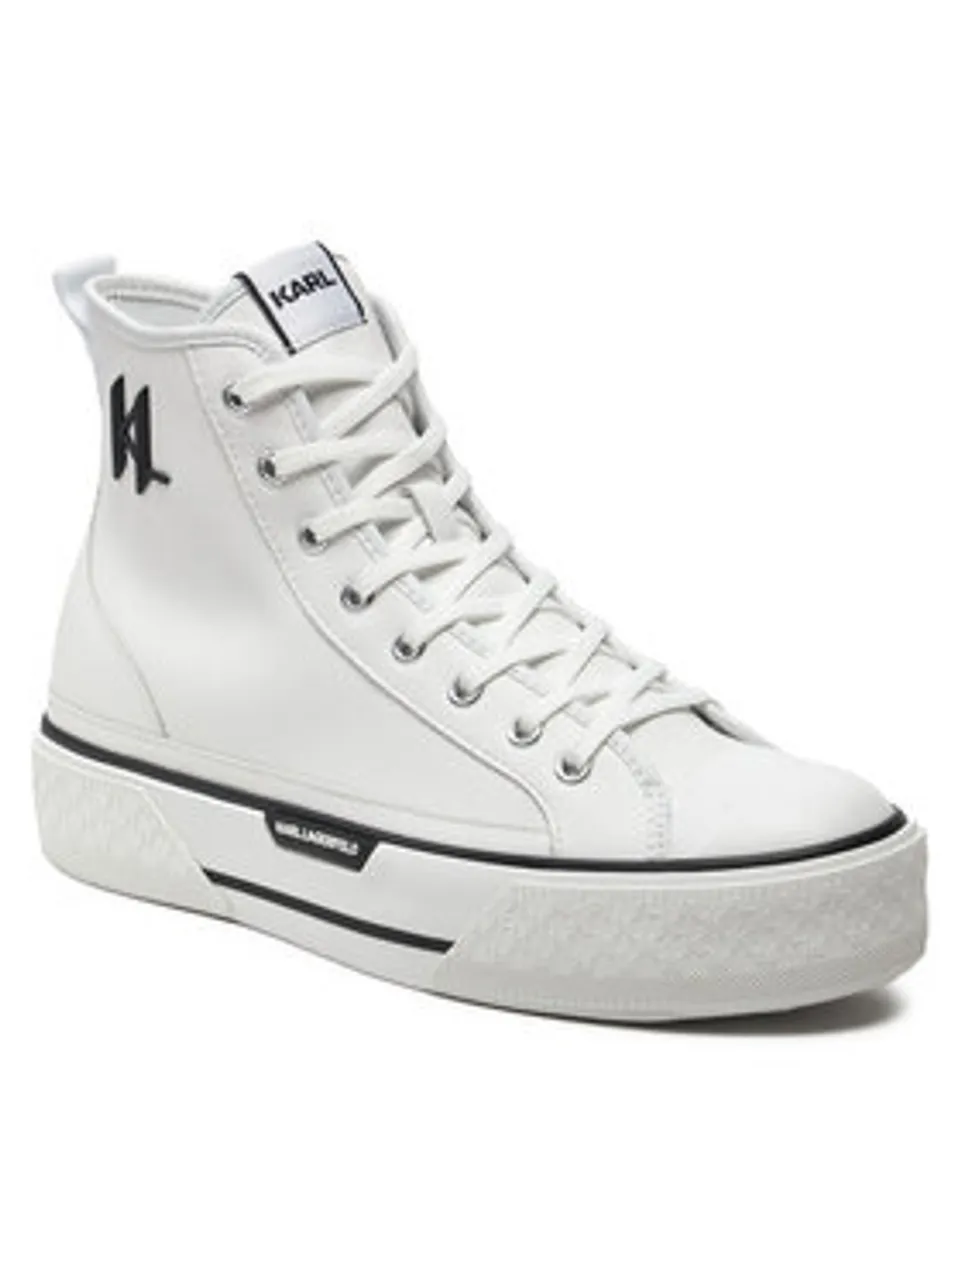 KARL LAGERFELD Sneakers aus Stoff KL50450 Weiß